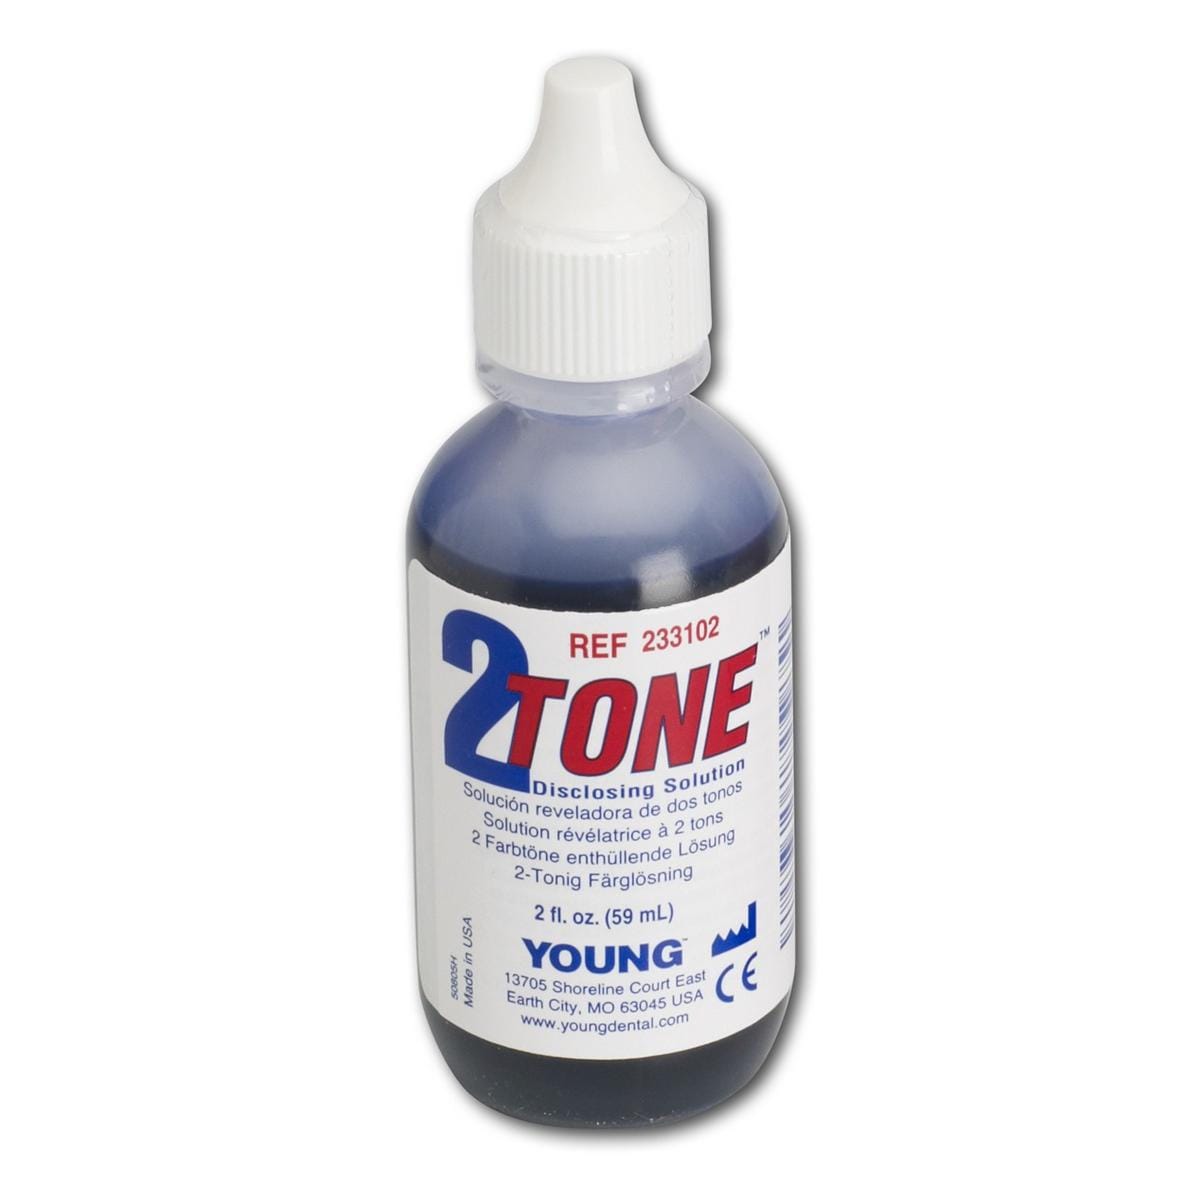 2 Tone Disclosing vloeistof - Flesje, 60 ml